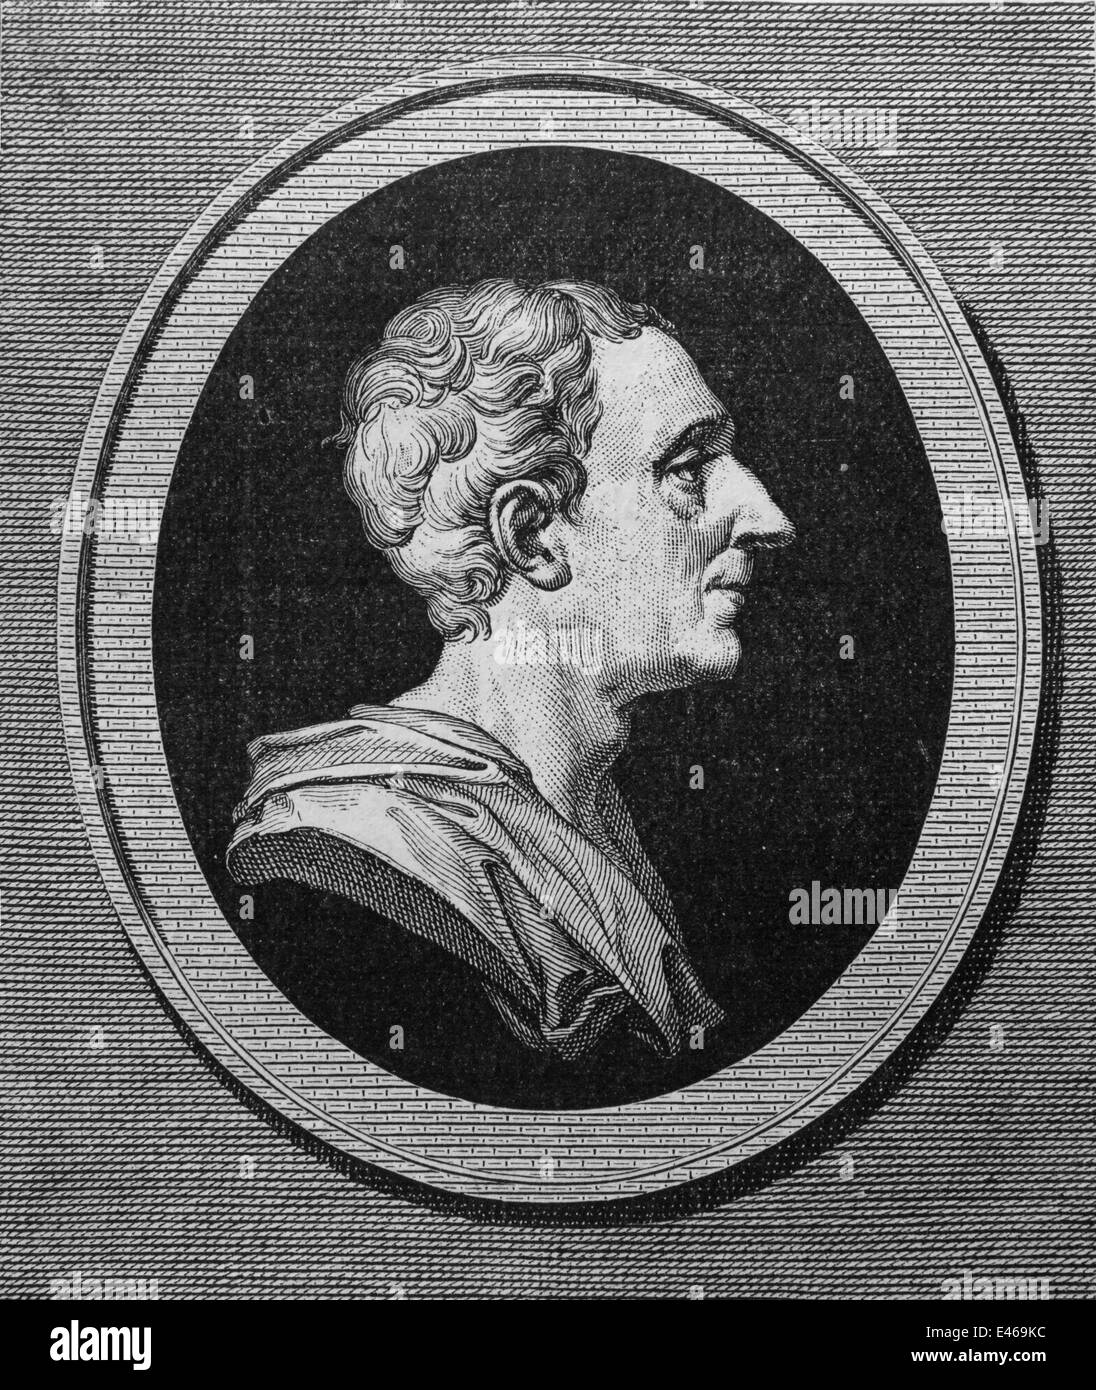 Montesquieu (1689-1755). Französischer Jurist und politischer Philosoph. Theorie: Gewaltenteilung. Zeitalter der Aufklärung. Gravur. Stockfoto